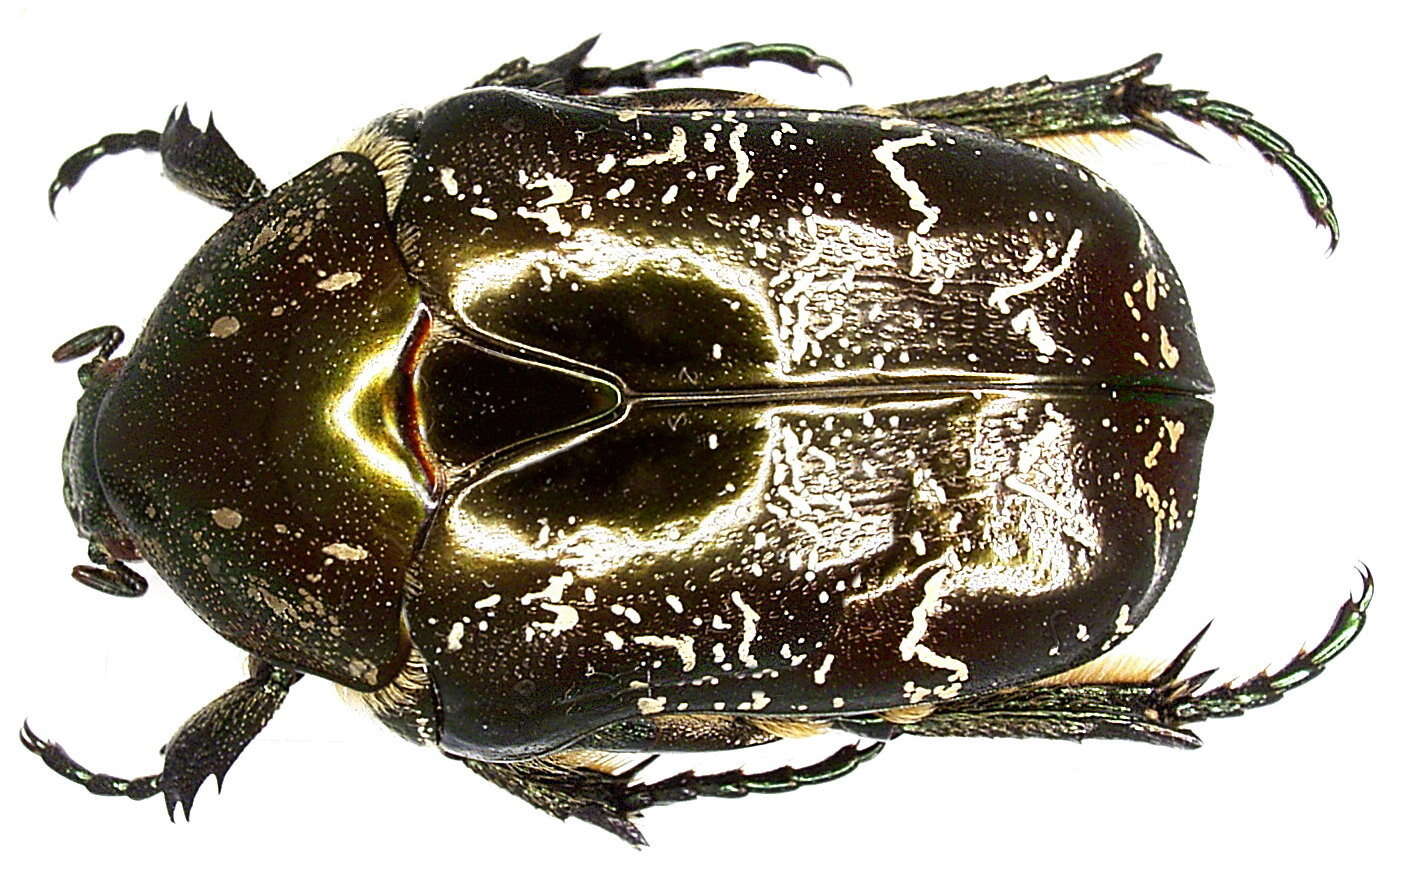 Image of Protaetia lugubris